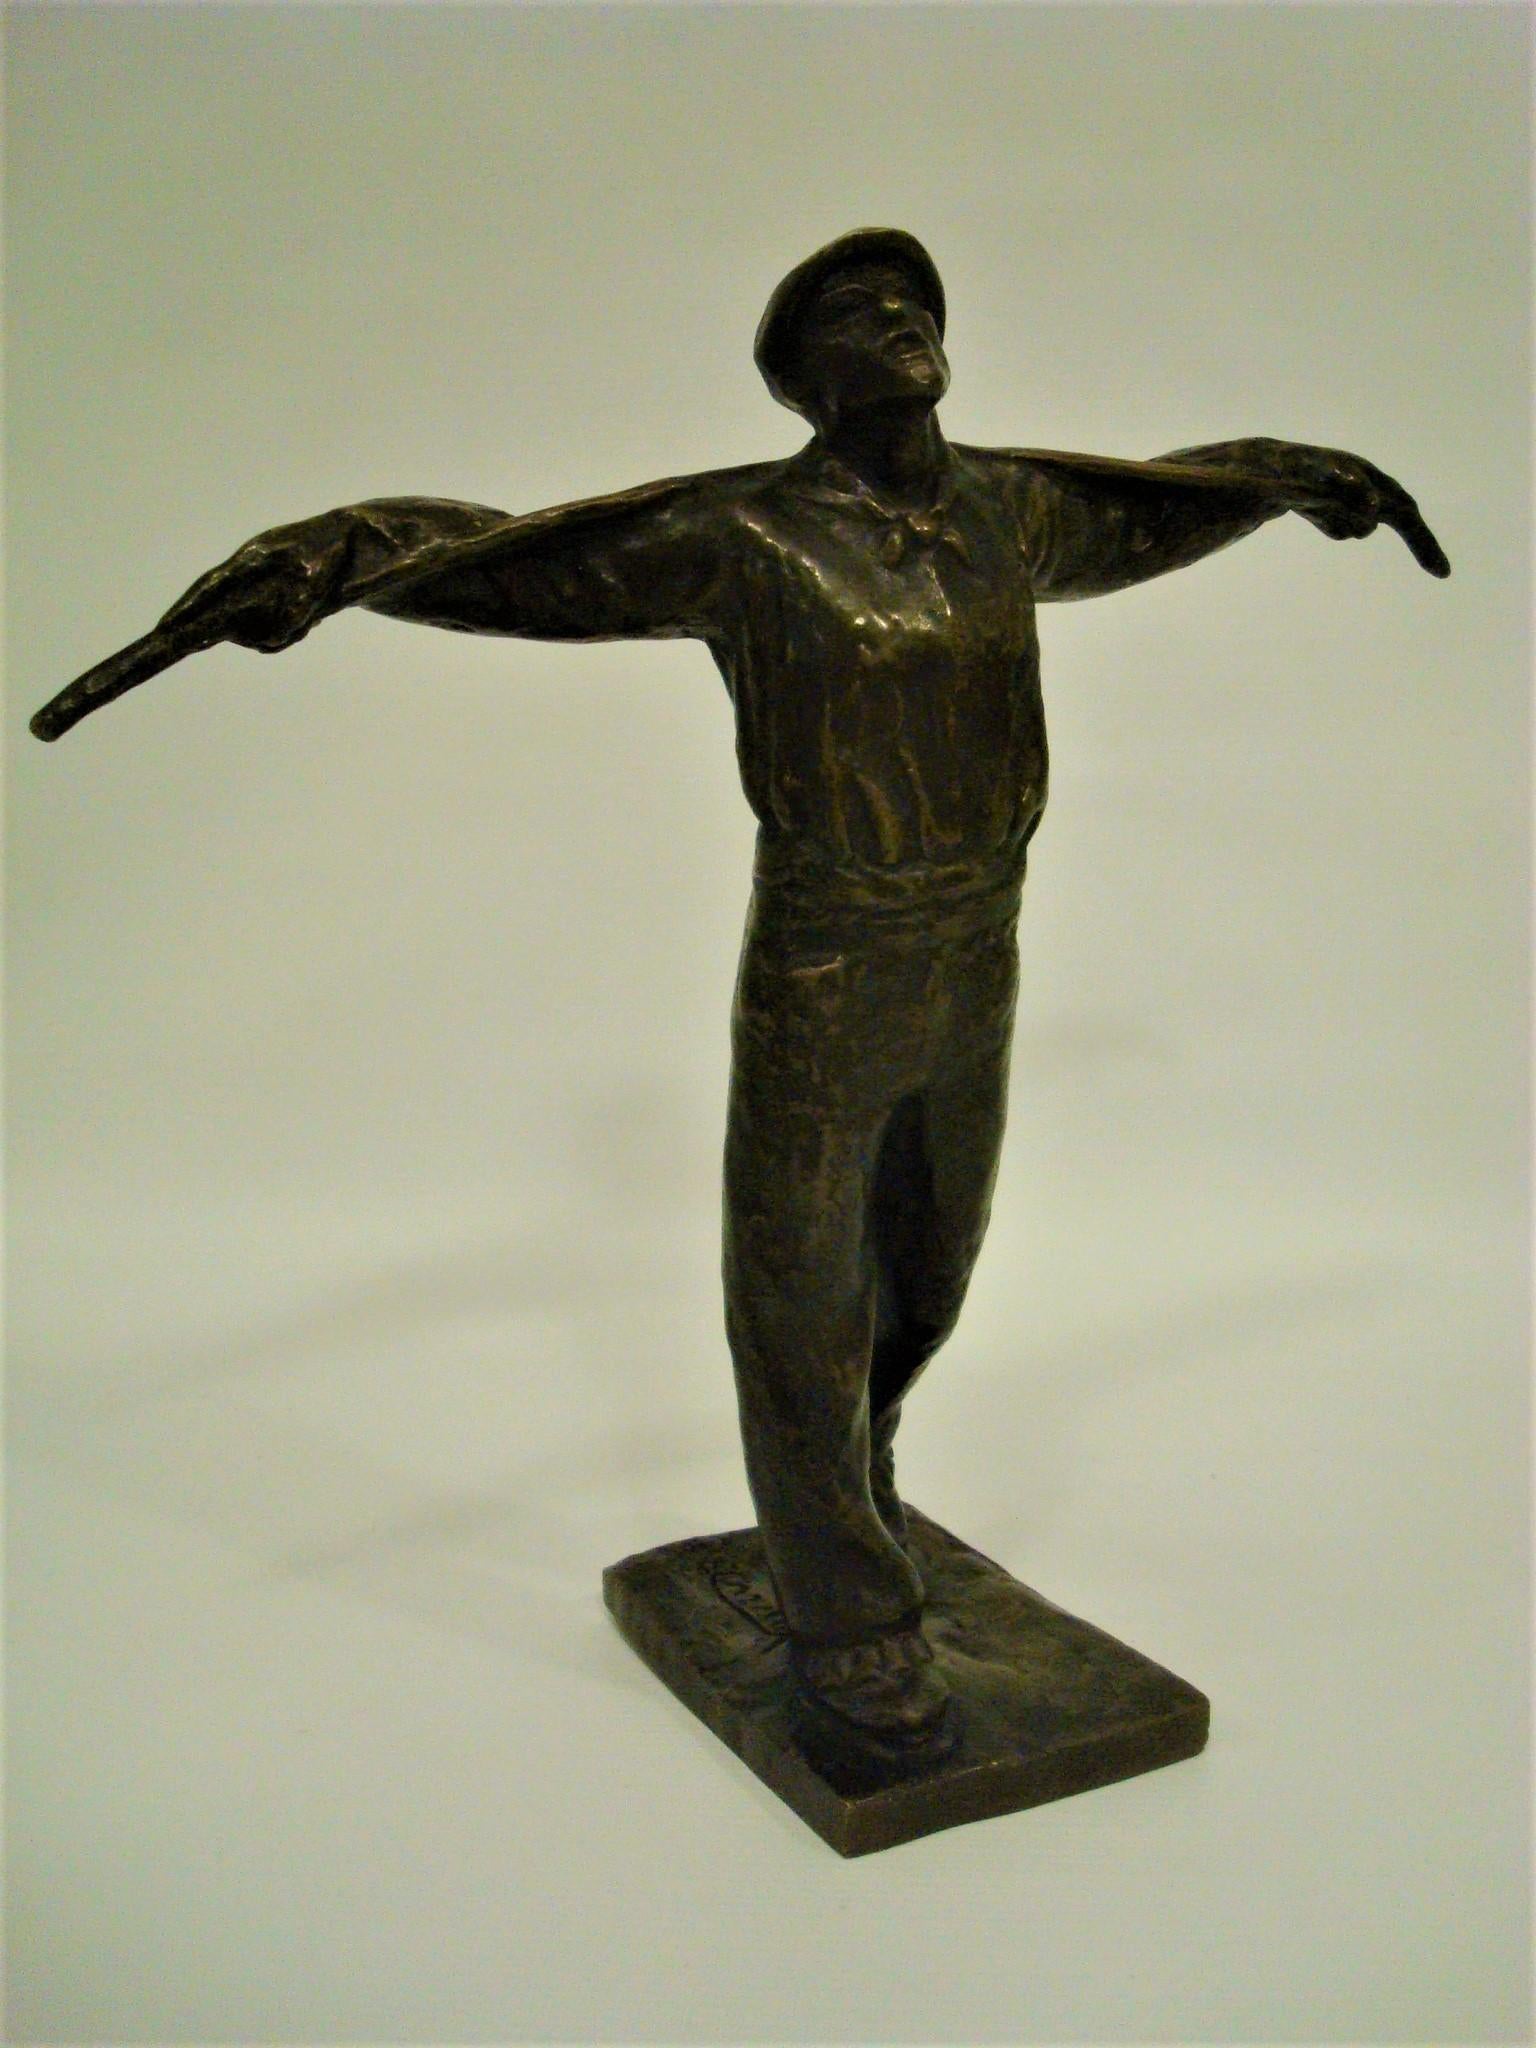 Sculpture en bronze Art déco d'un ouvrier. Edouard Cazaux. France années 1920.
Edouard Cazaux est l'un des plus importants artistes associés au mouvement Art déco français. Il était sculpteur et céramiste, et a appris son art très jeune. Artiste